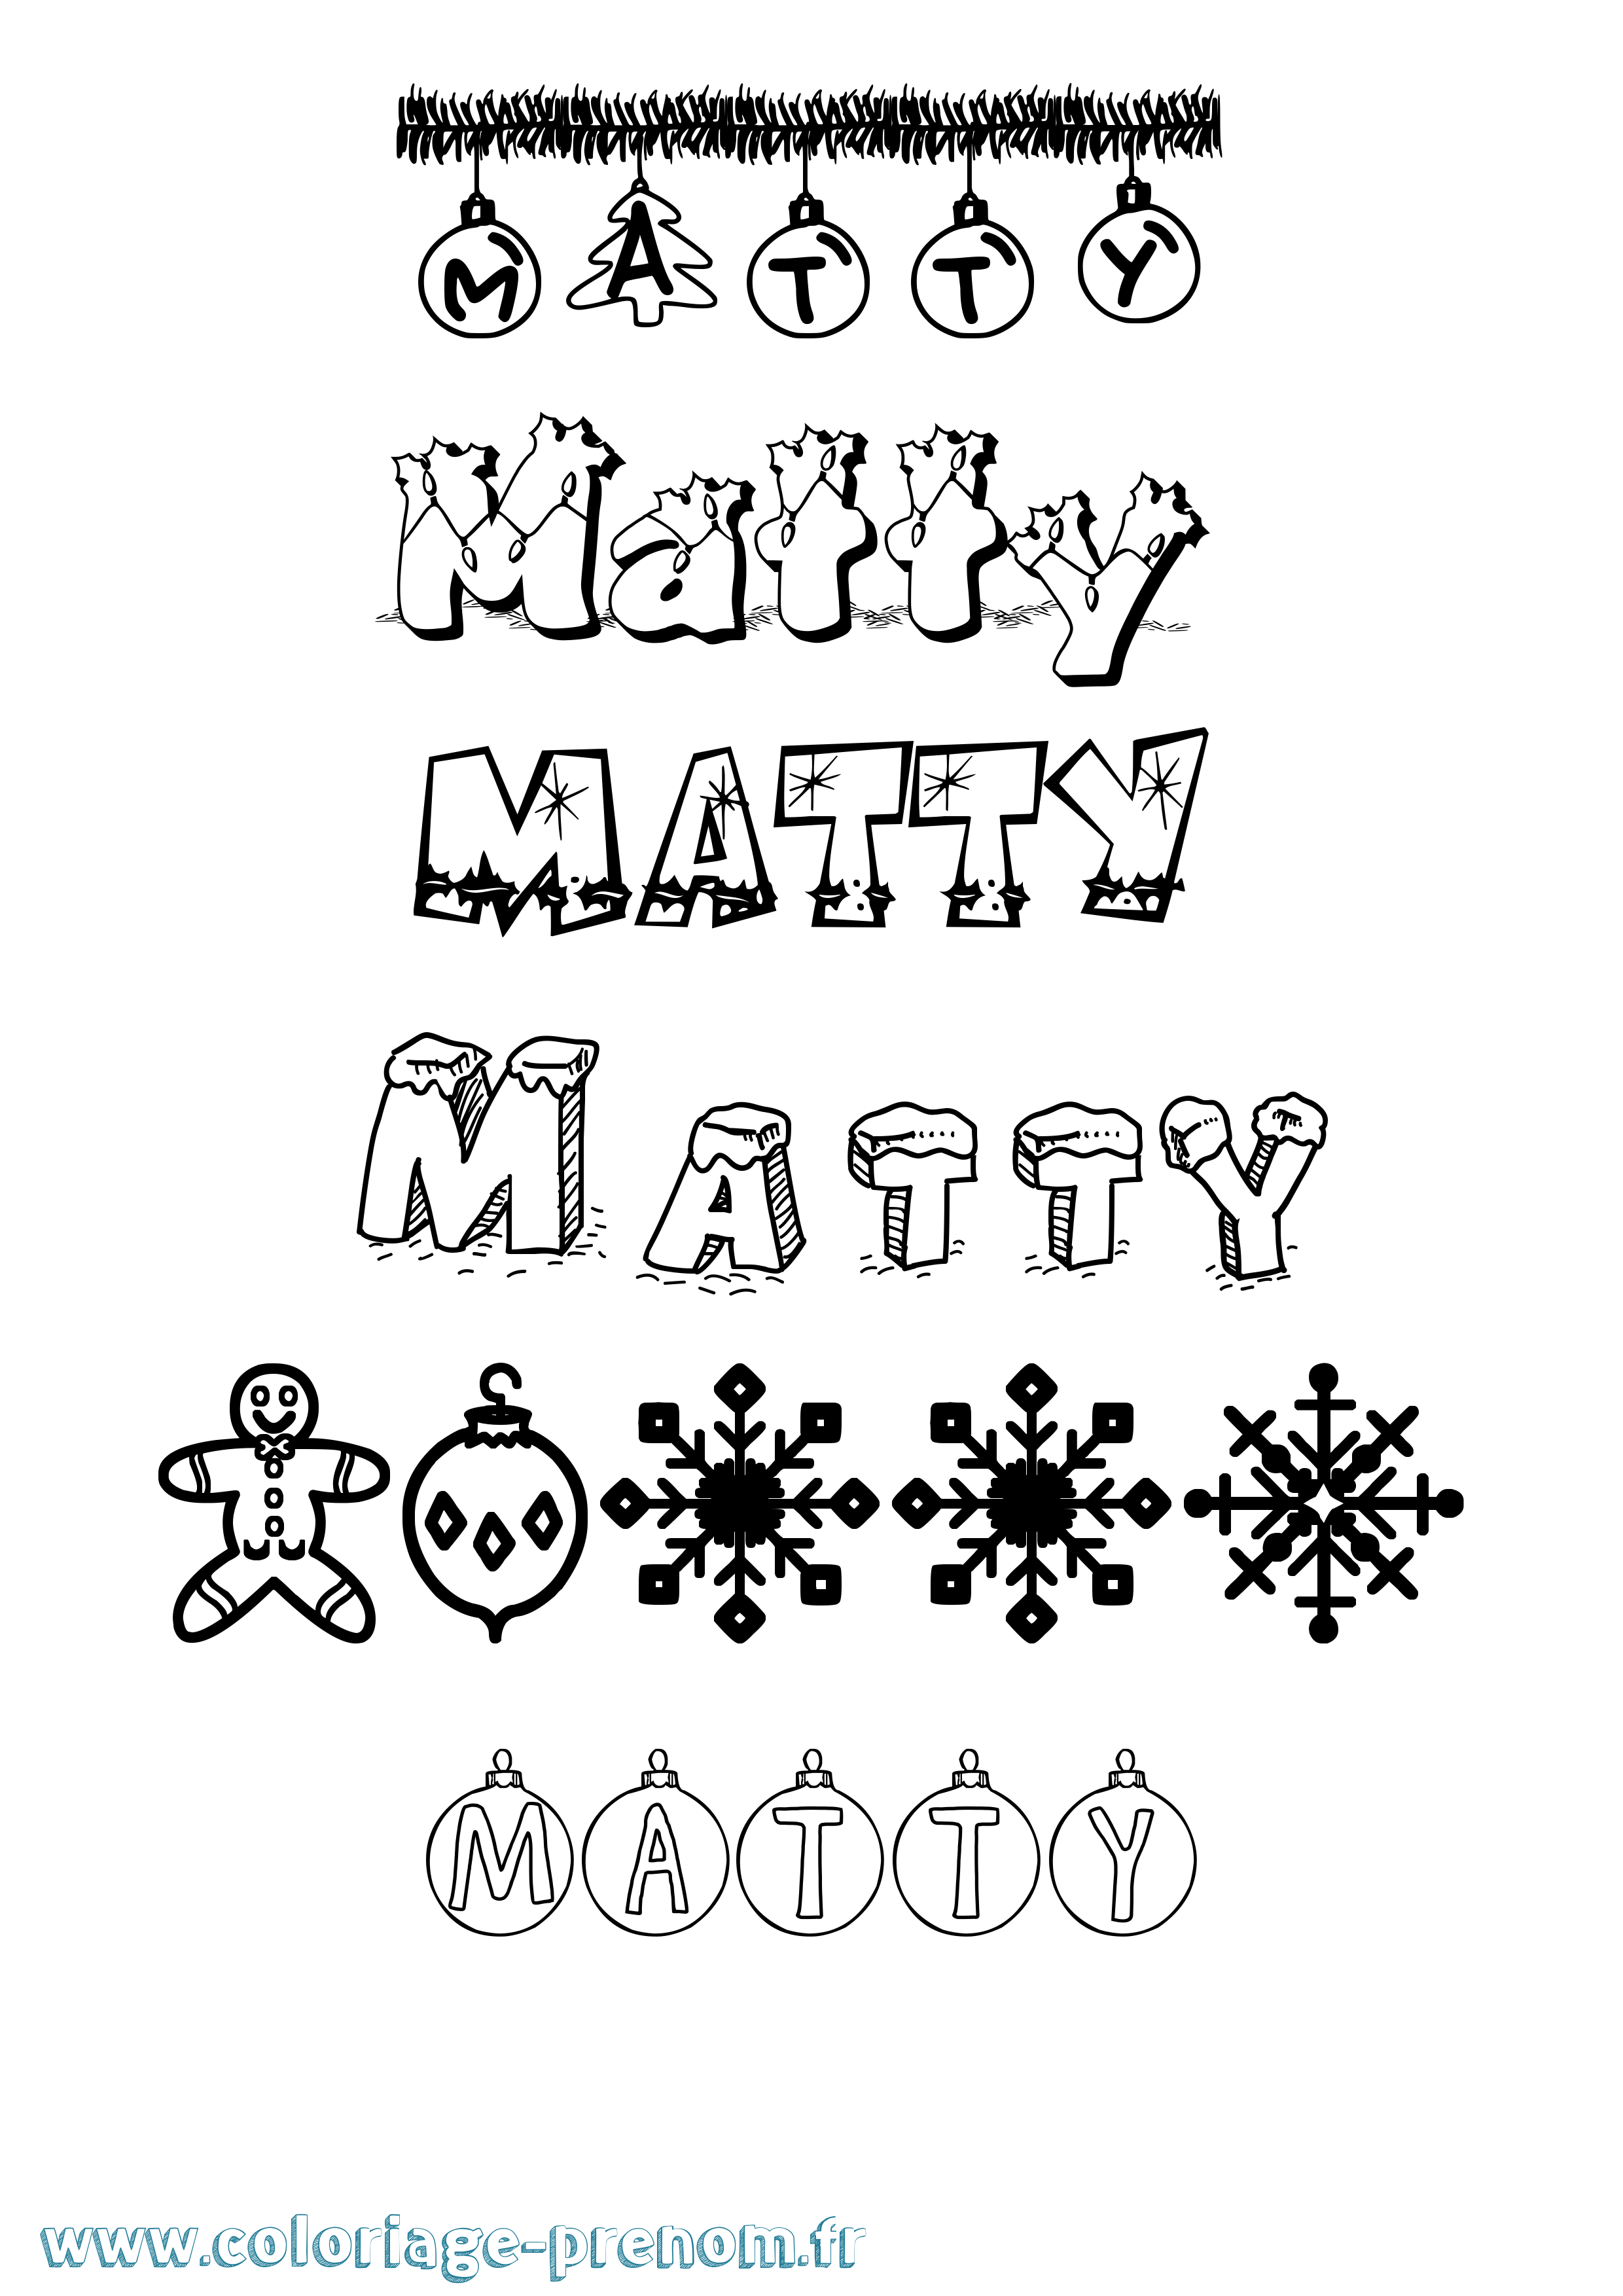 Coloriage prénom Matty Noël